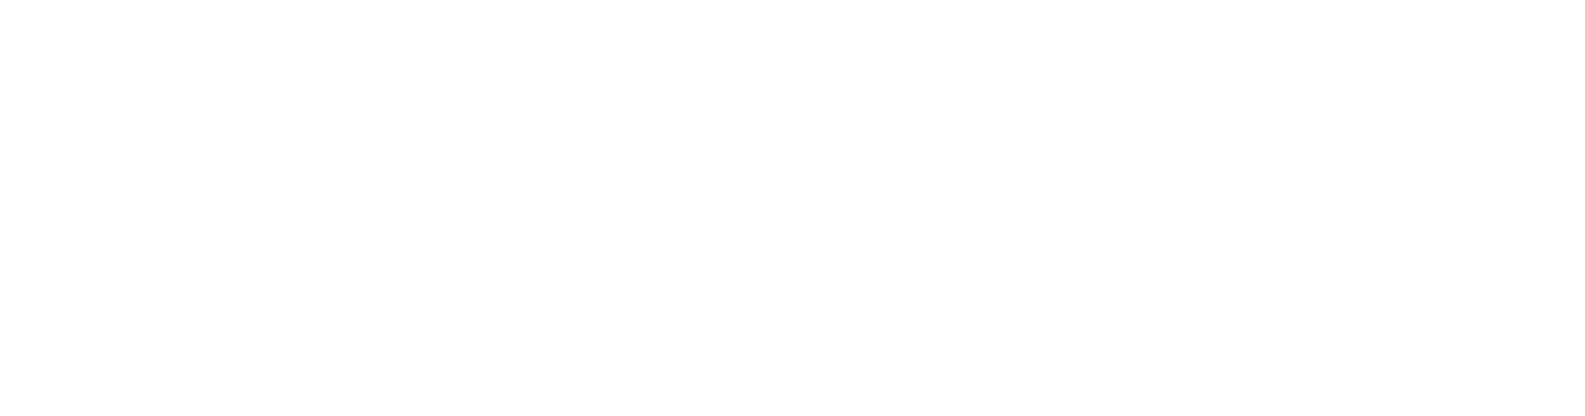 Grow-Ensemble-logo-white